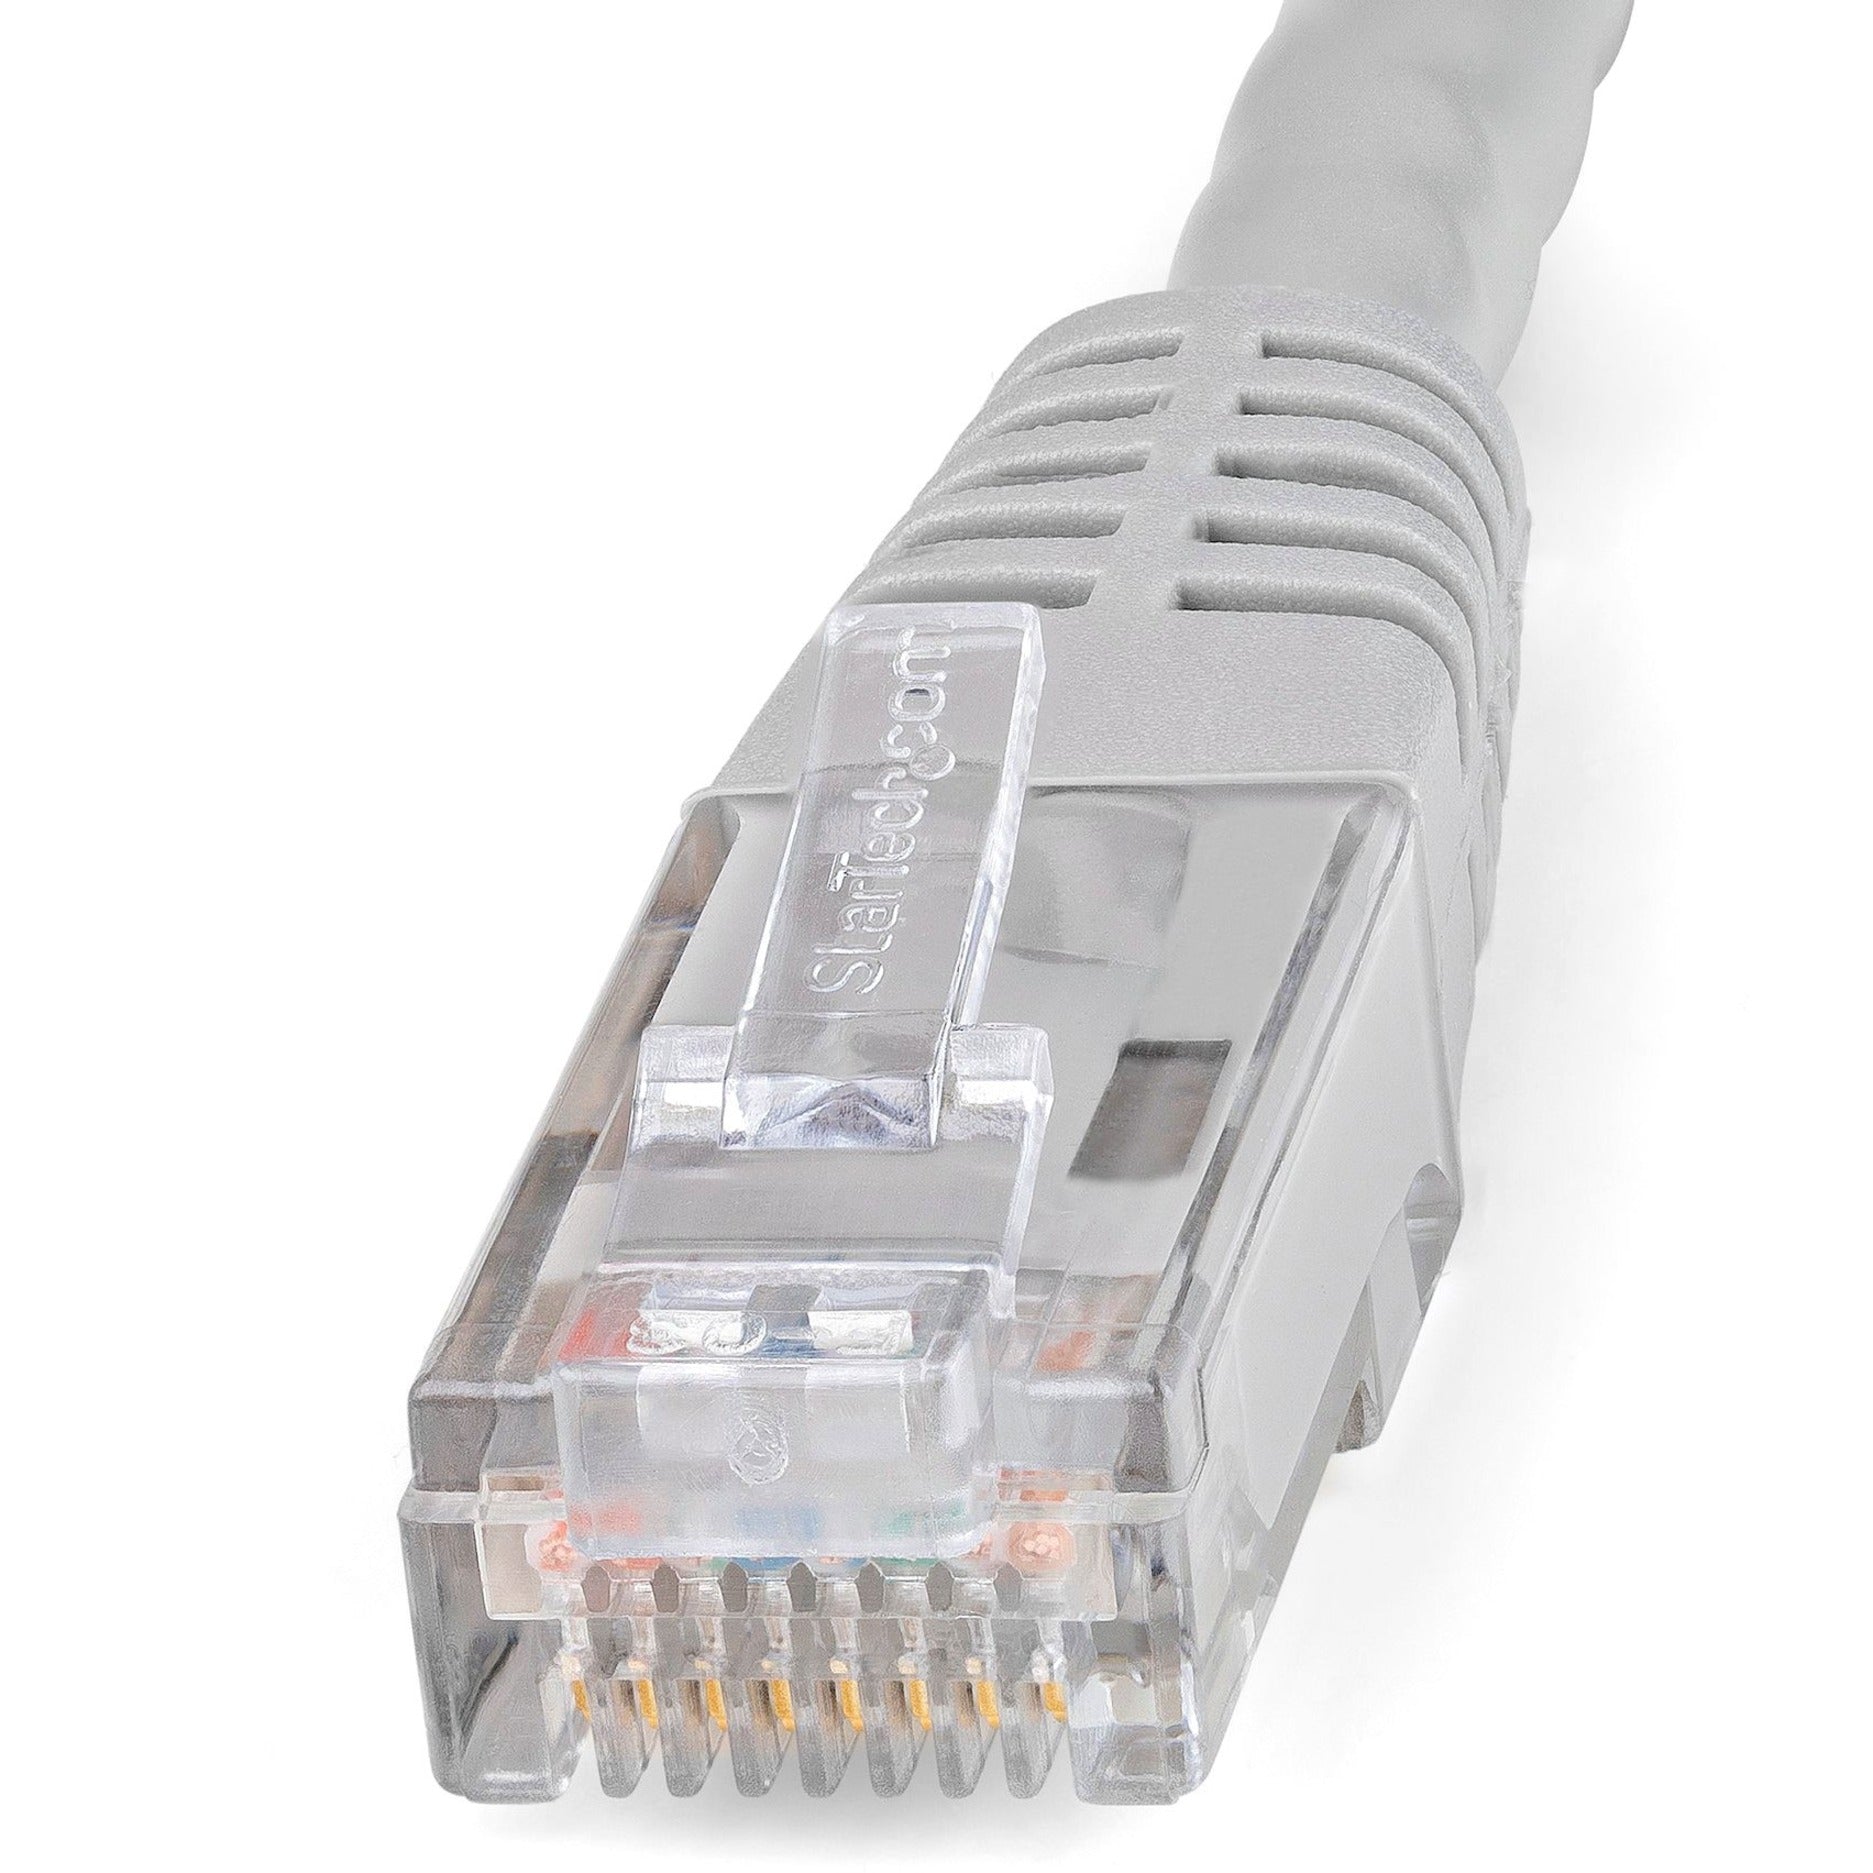 品牌：StarTech.com 产品名称：灰色Cat6 UTP补丁电缆20英尺，10 Gbit/s数据传输速率，终身保修